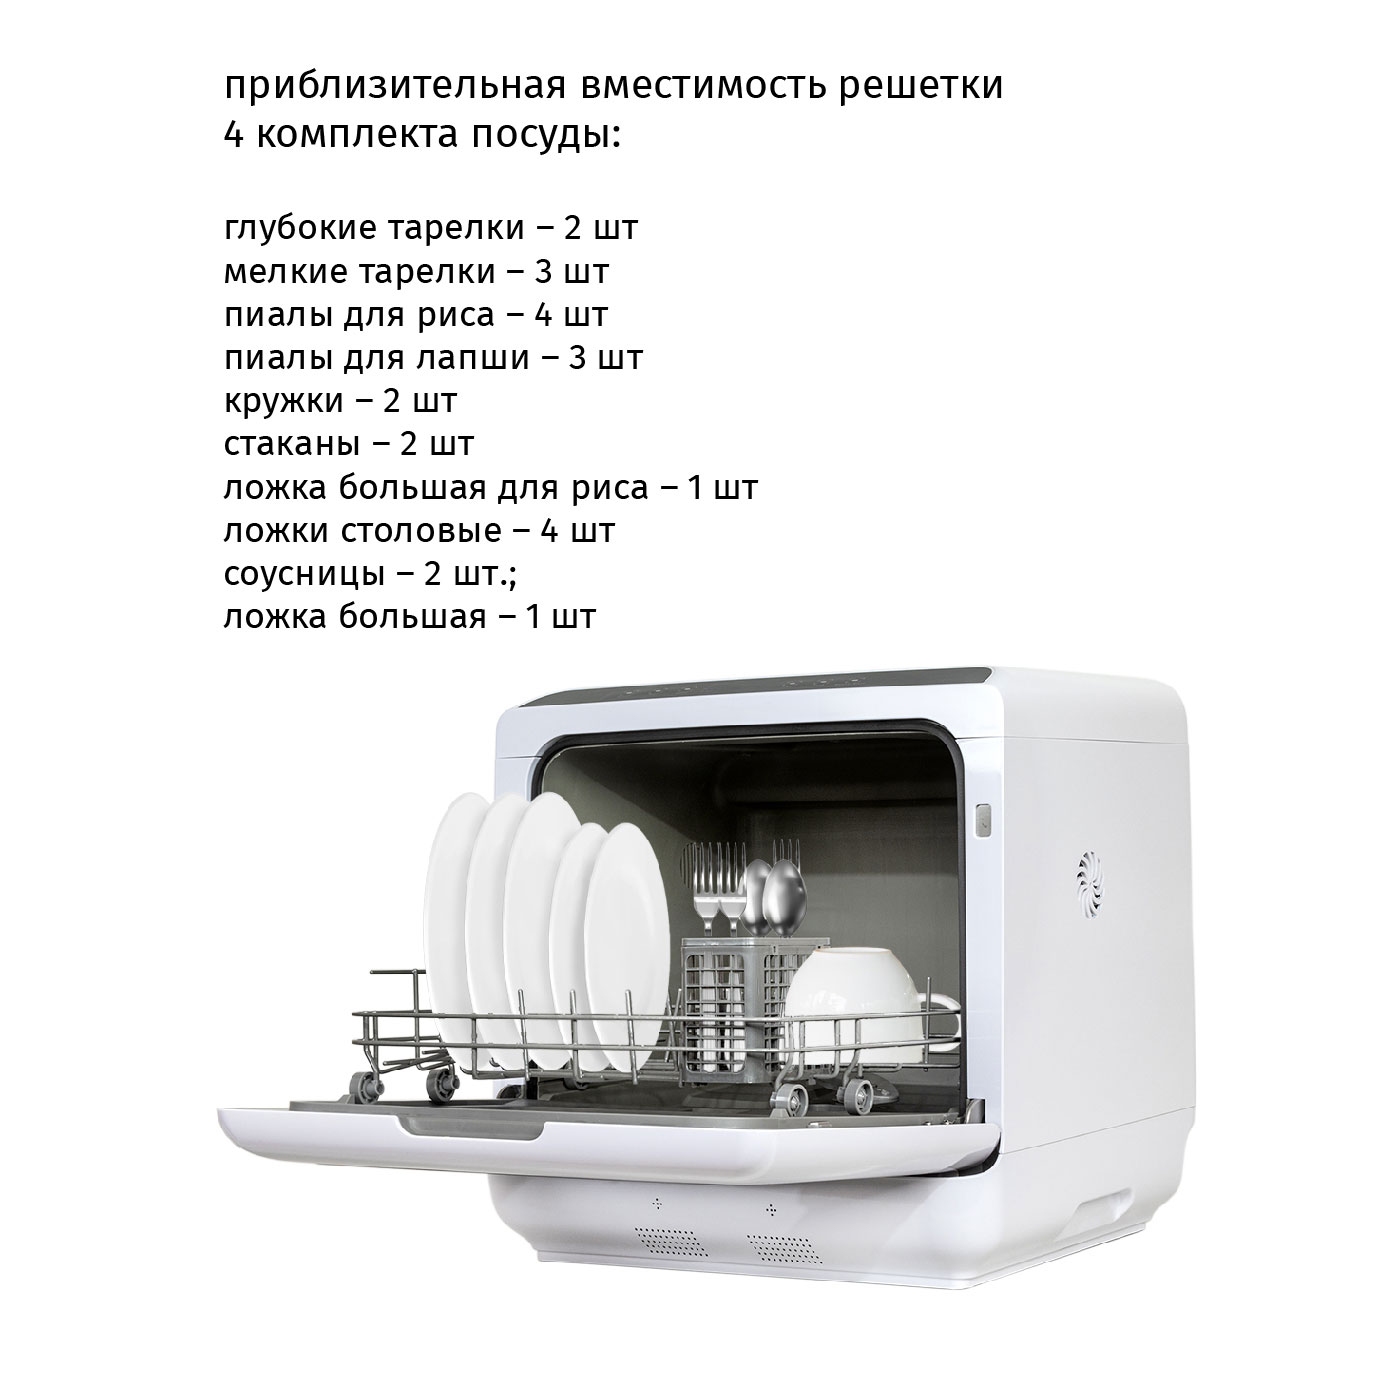 Настольная посудомоечная машина Pioneer DWM04